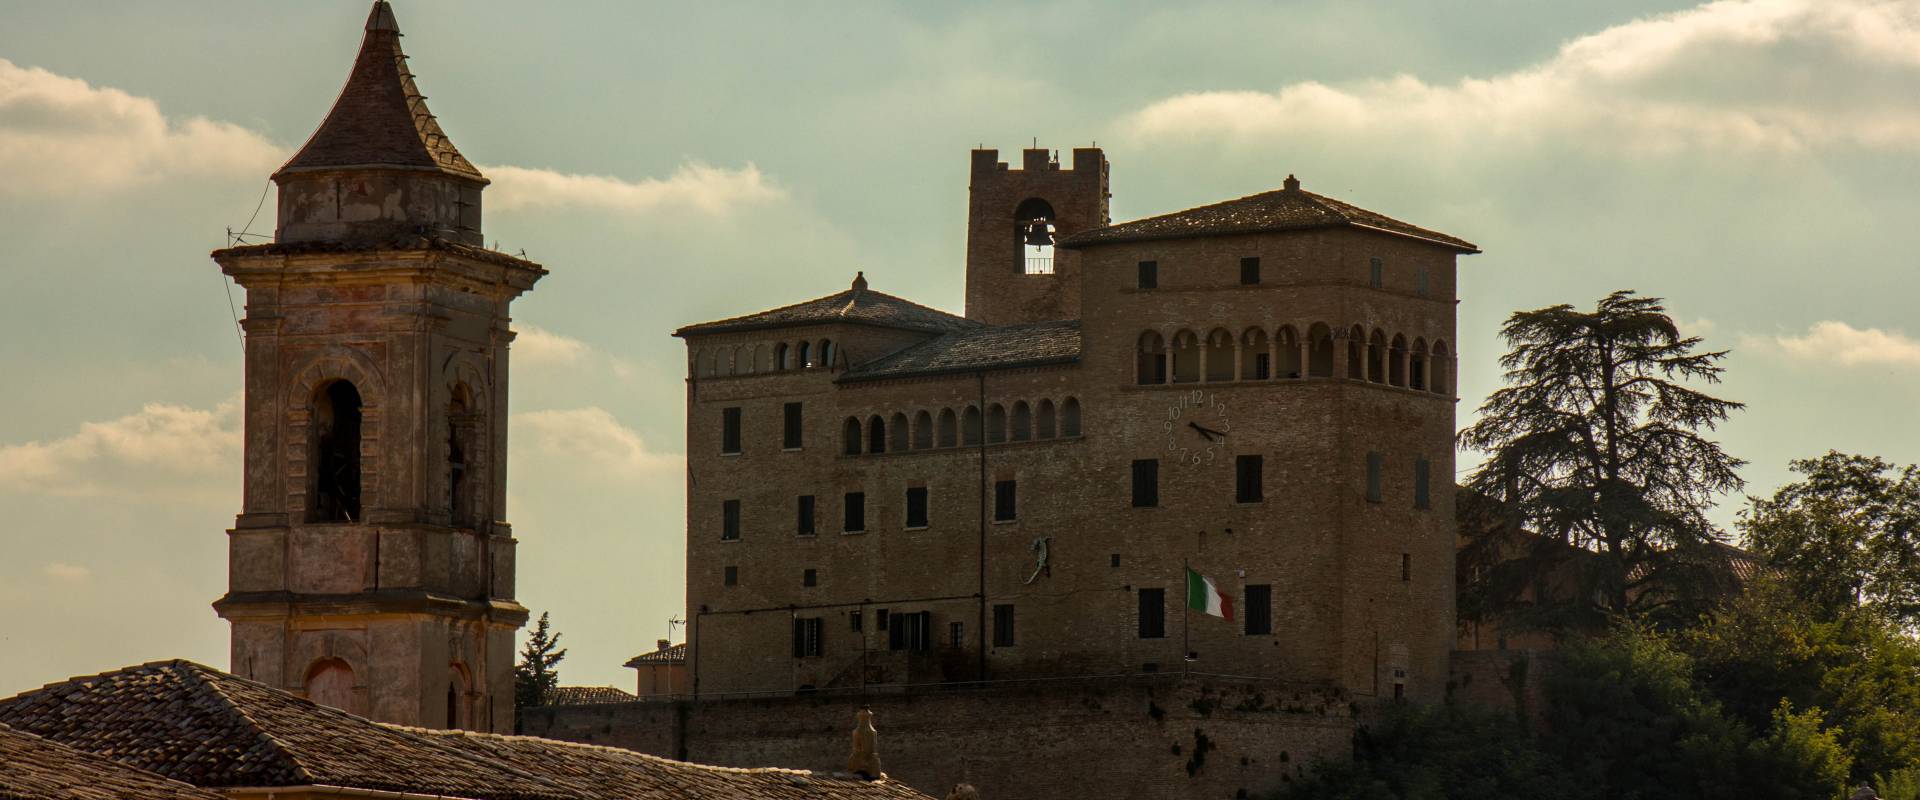 Castello Malatestiano Longiano 2 foto di Lukeman90